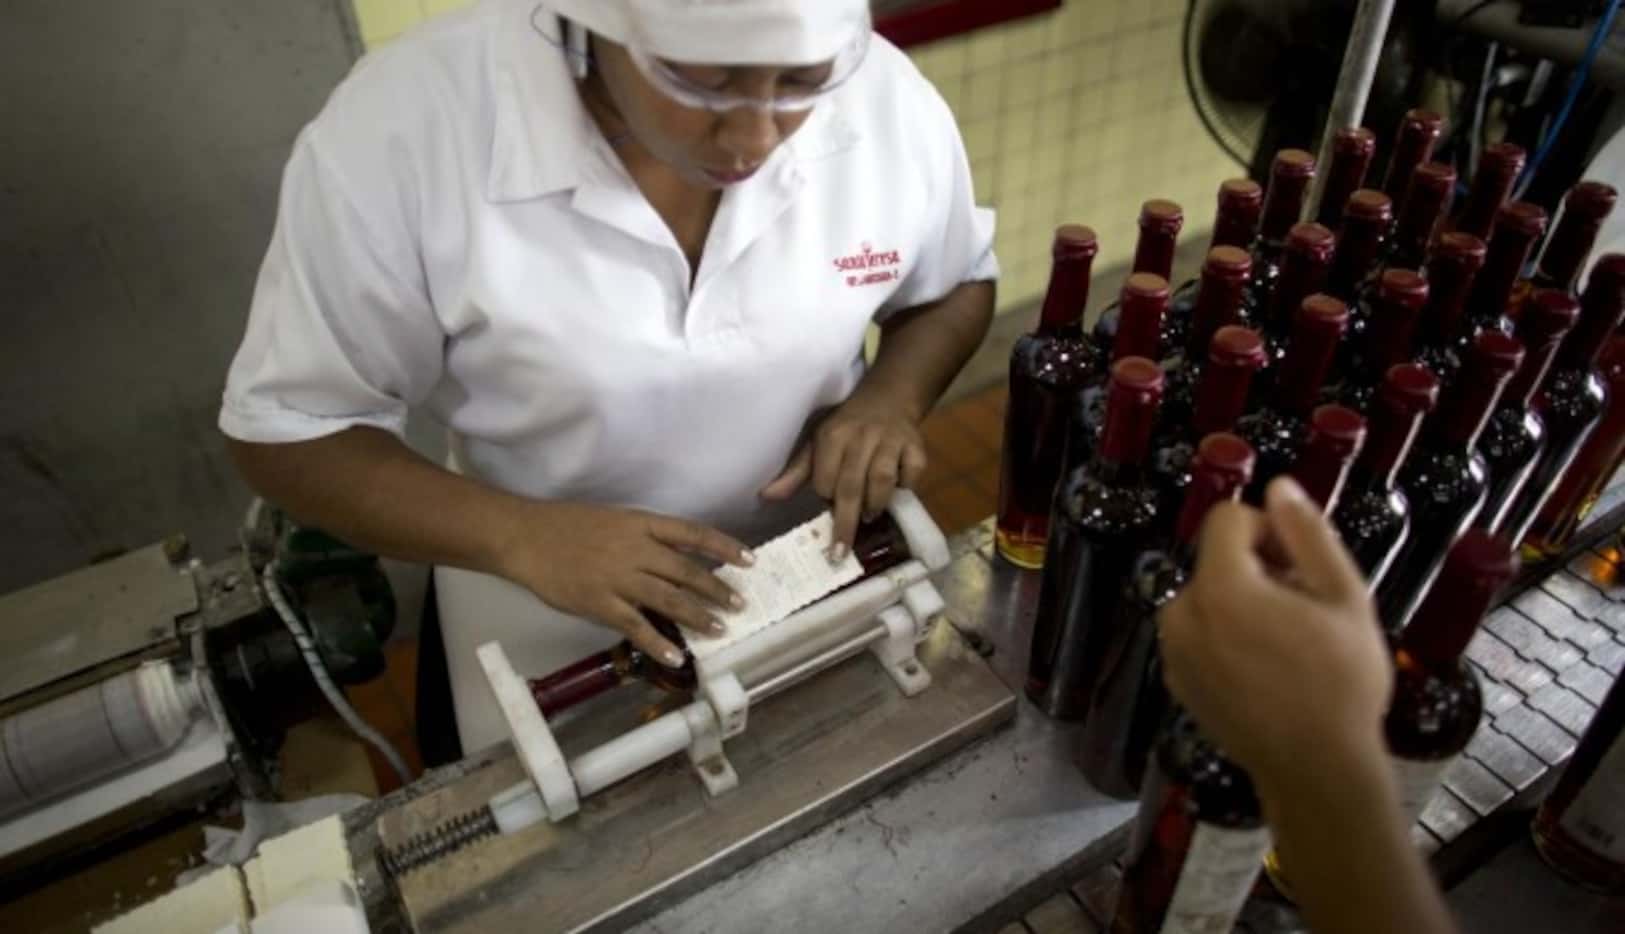 
				Trabajadores colocan etiquetes a botellas de ron Santa Teresa, en La Victoria,...